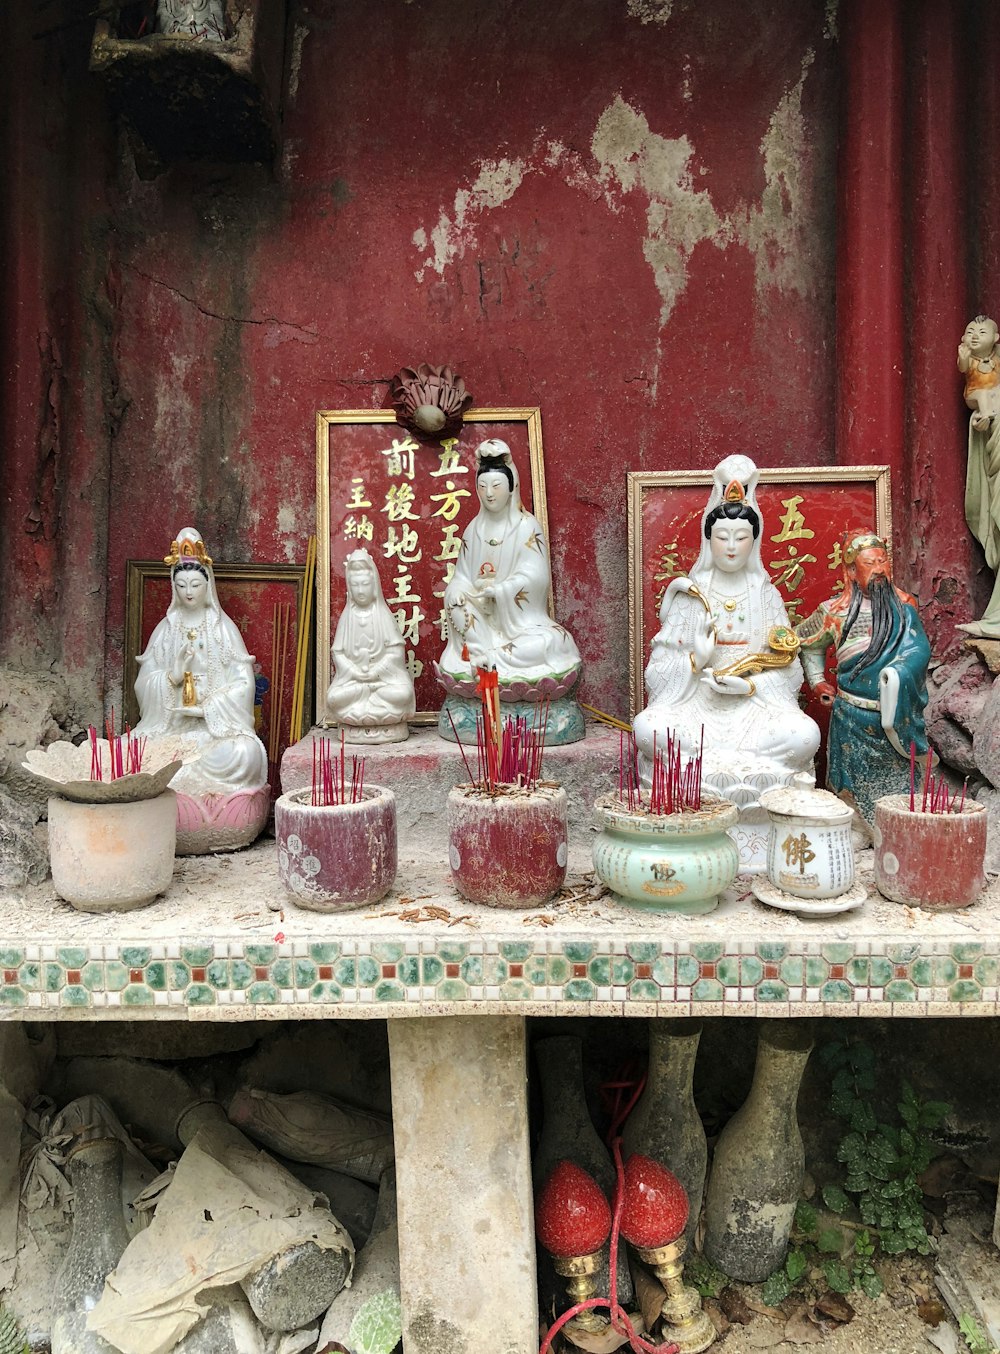 cinque figurine di dio indù in ceramica assortite